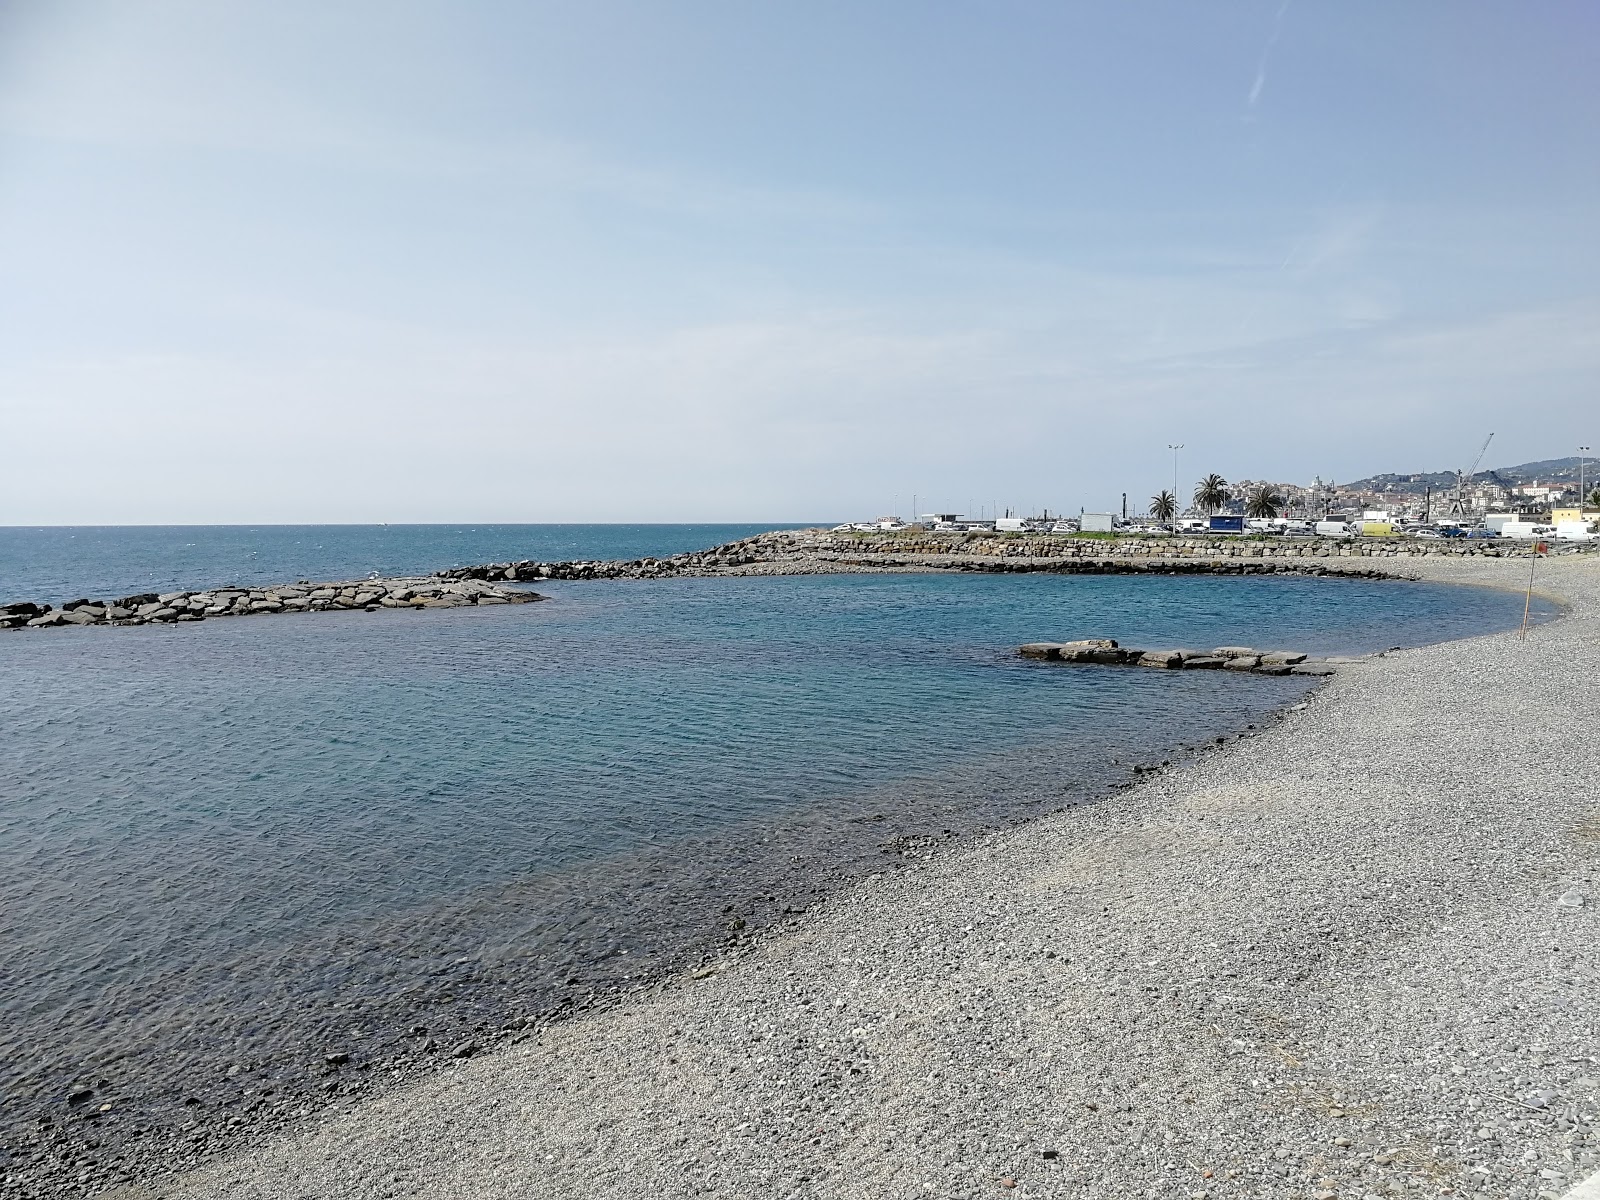 Foto von Spiaggia Sogni d'estate mit feiner grauer kies Oberfläche